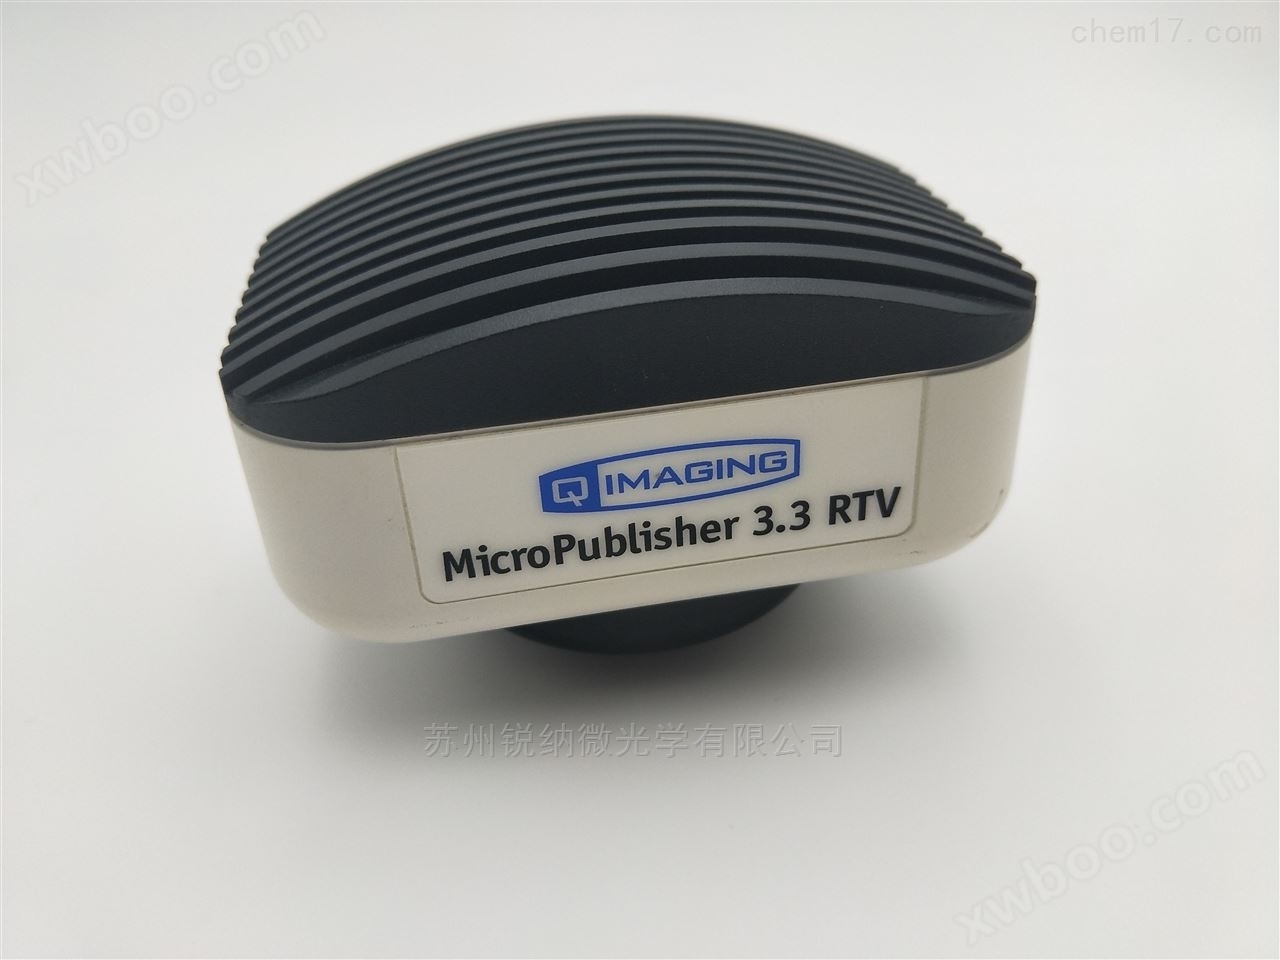 原配工业相机QIMAING MicroPublisher3.3RTV